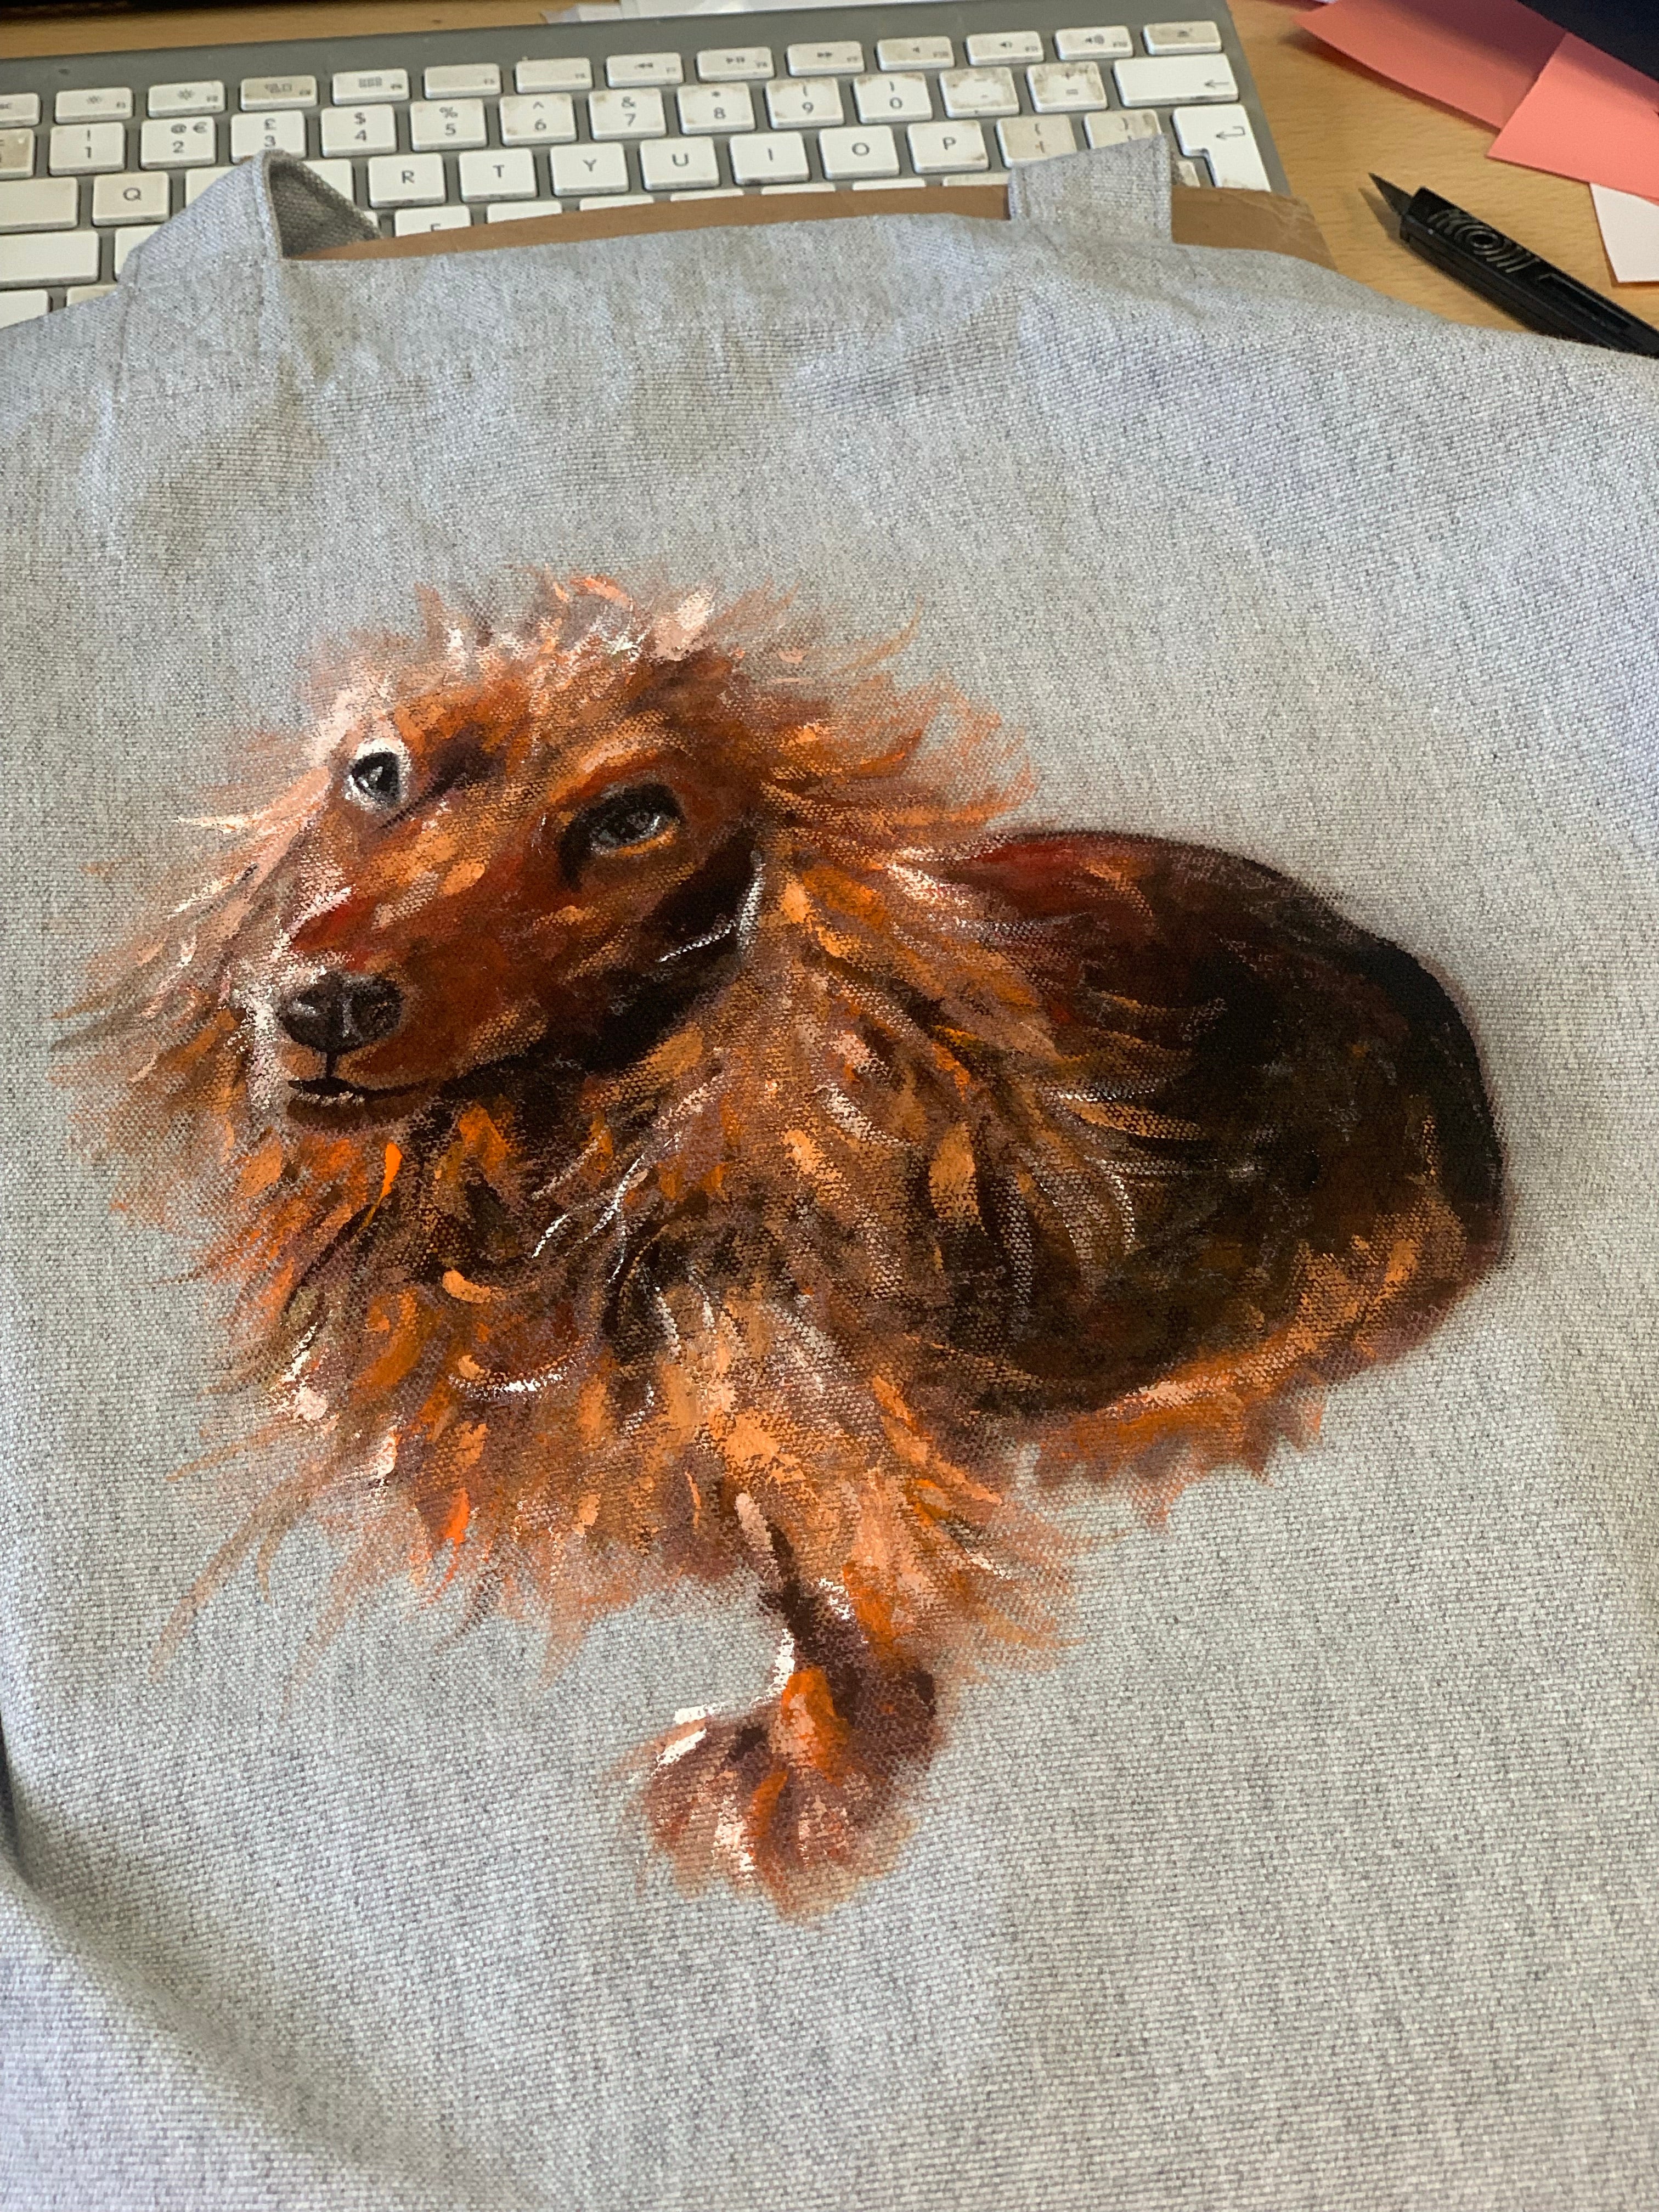 Custom painted pet t-shirt